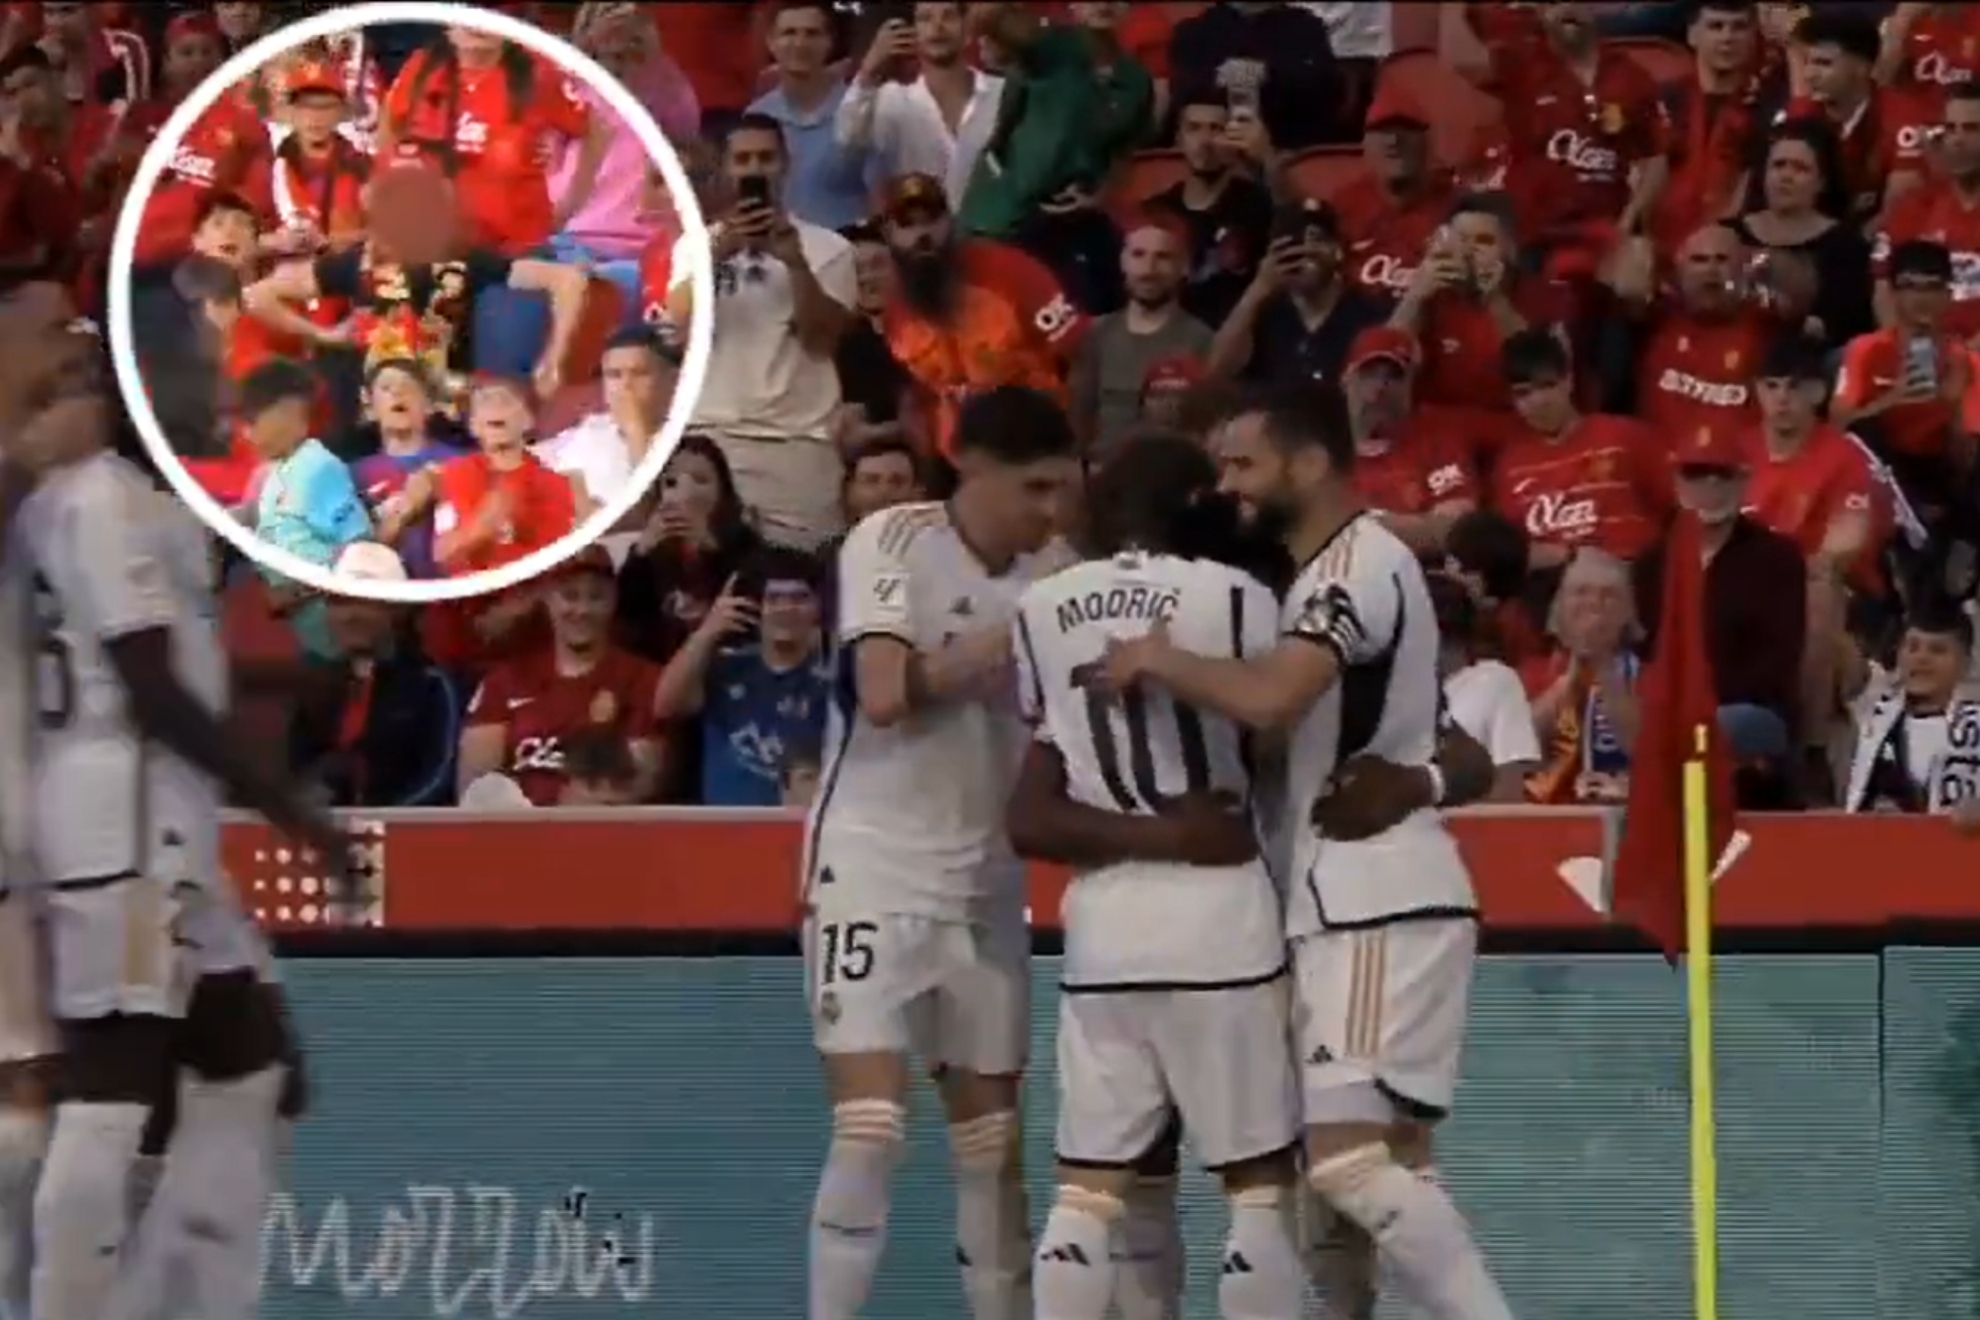 El Real Mallorca reacciona ante el gesto racista tras el gol de Tchouamni: El club no tolerar ninguna manifestacin de racismo